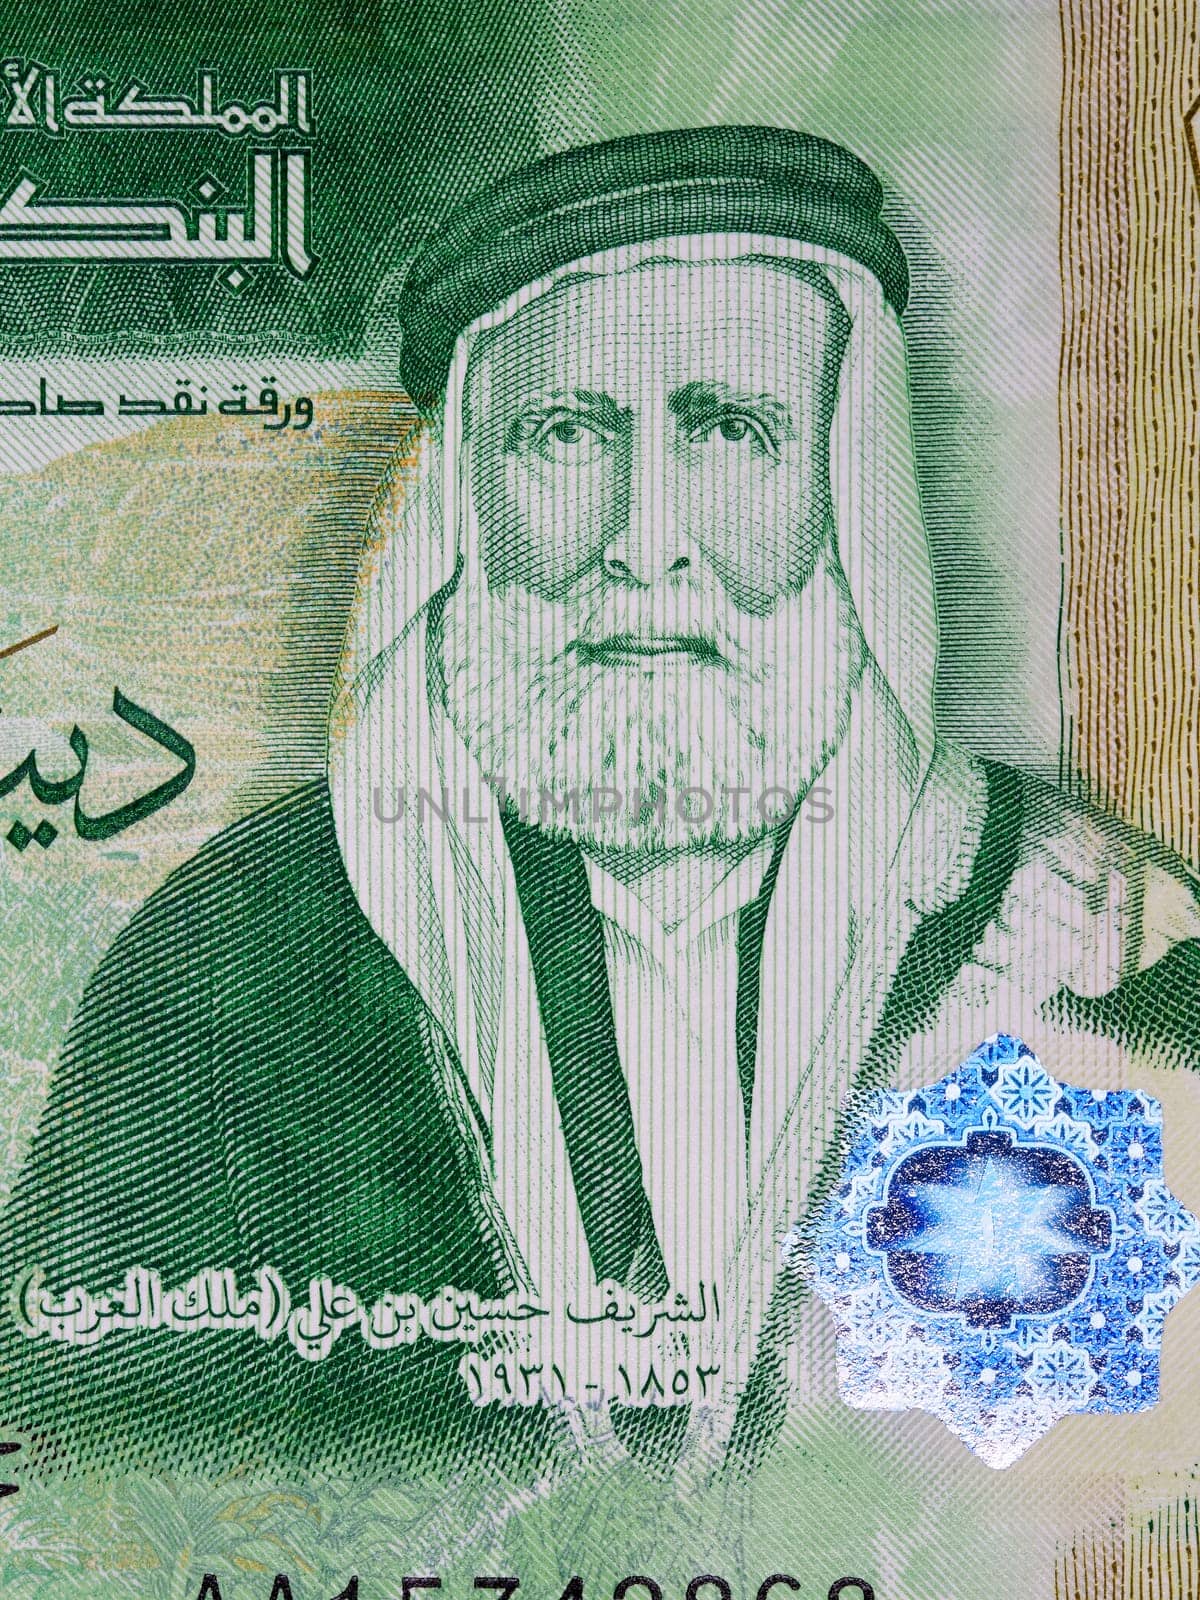 Hussein bin Ali a portrait from Jordanian money by johan10